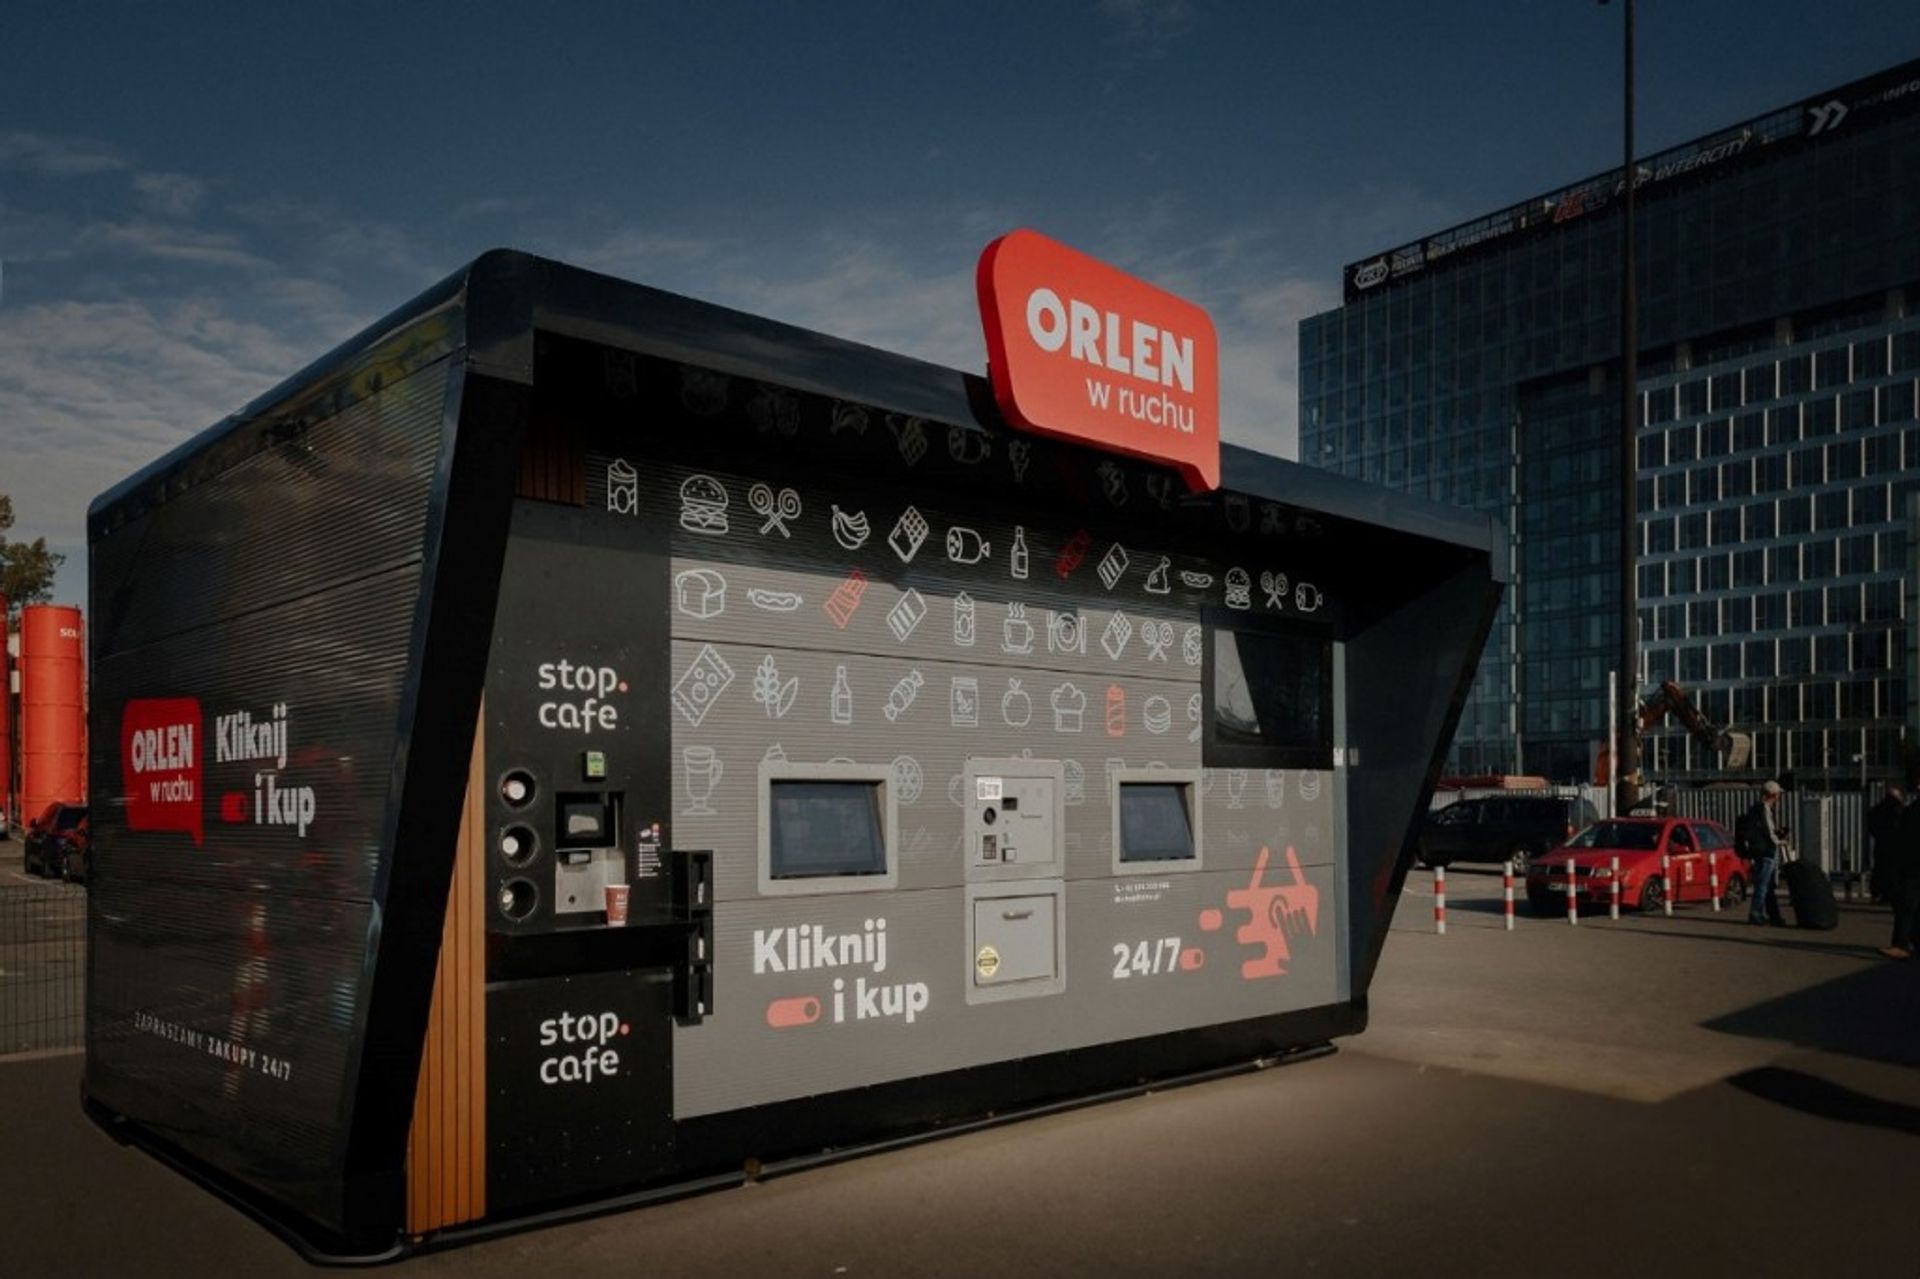 Grupa ORLEN uruchomiła pierwszy punkt automatycznej sprzedaży pod marką ORLEN w ruchu